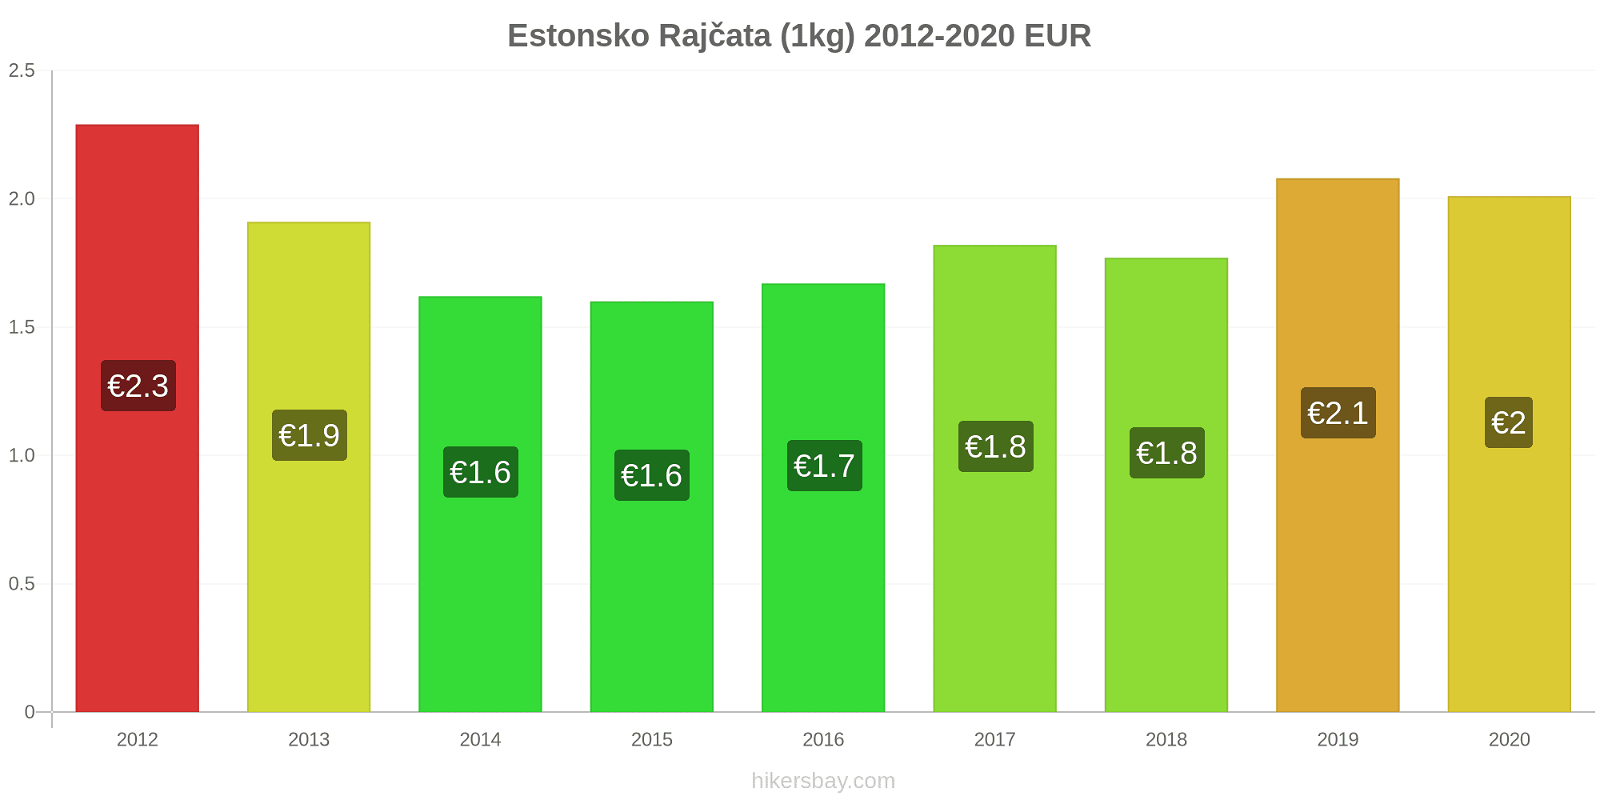 Estonsko změny cen Rajčata (1kg) hikersbay.com